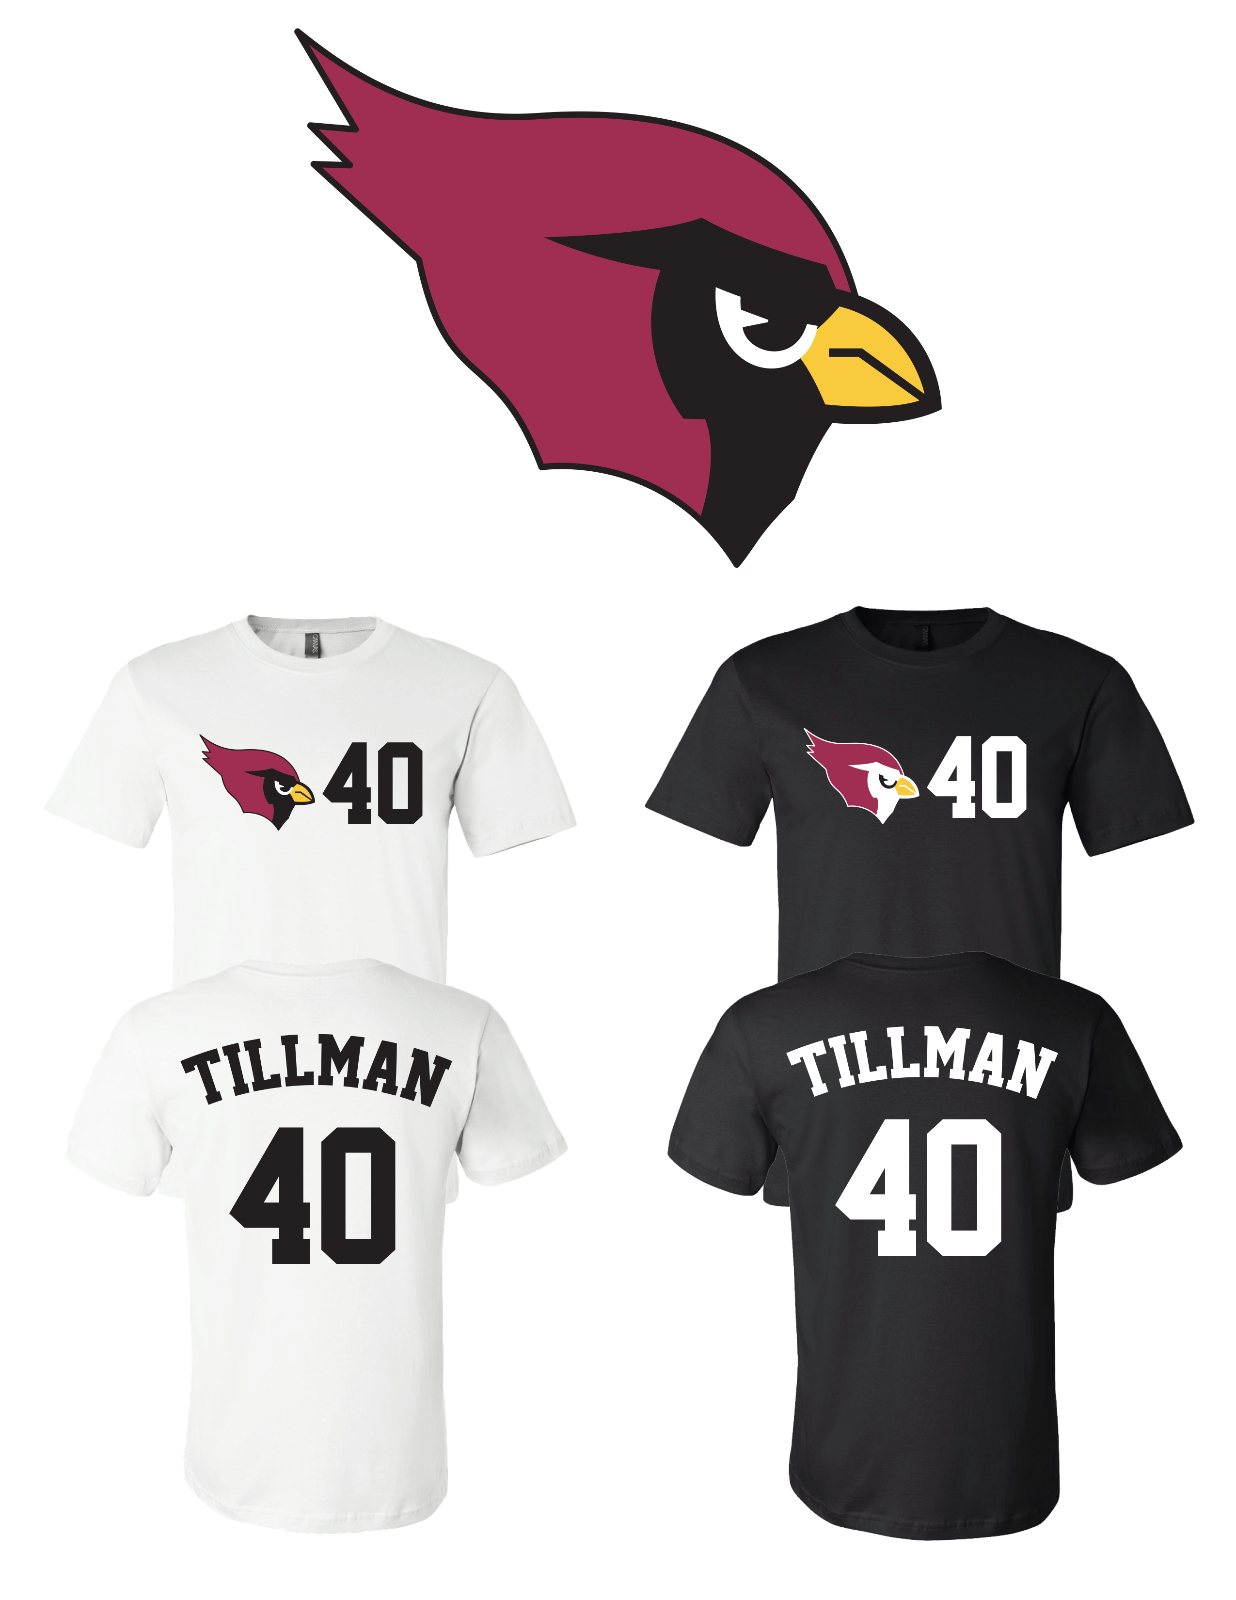 Pat Tillman #40 Arizona Cardinals Jersey player shirt